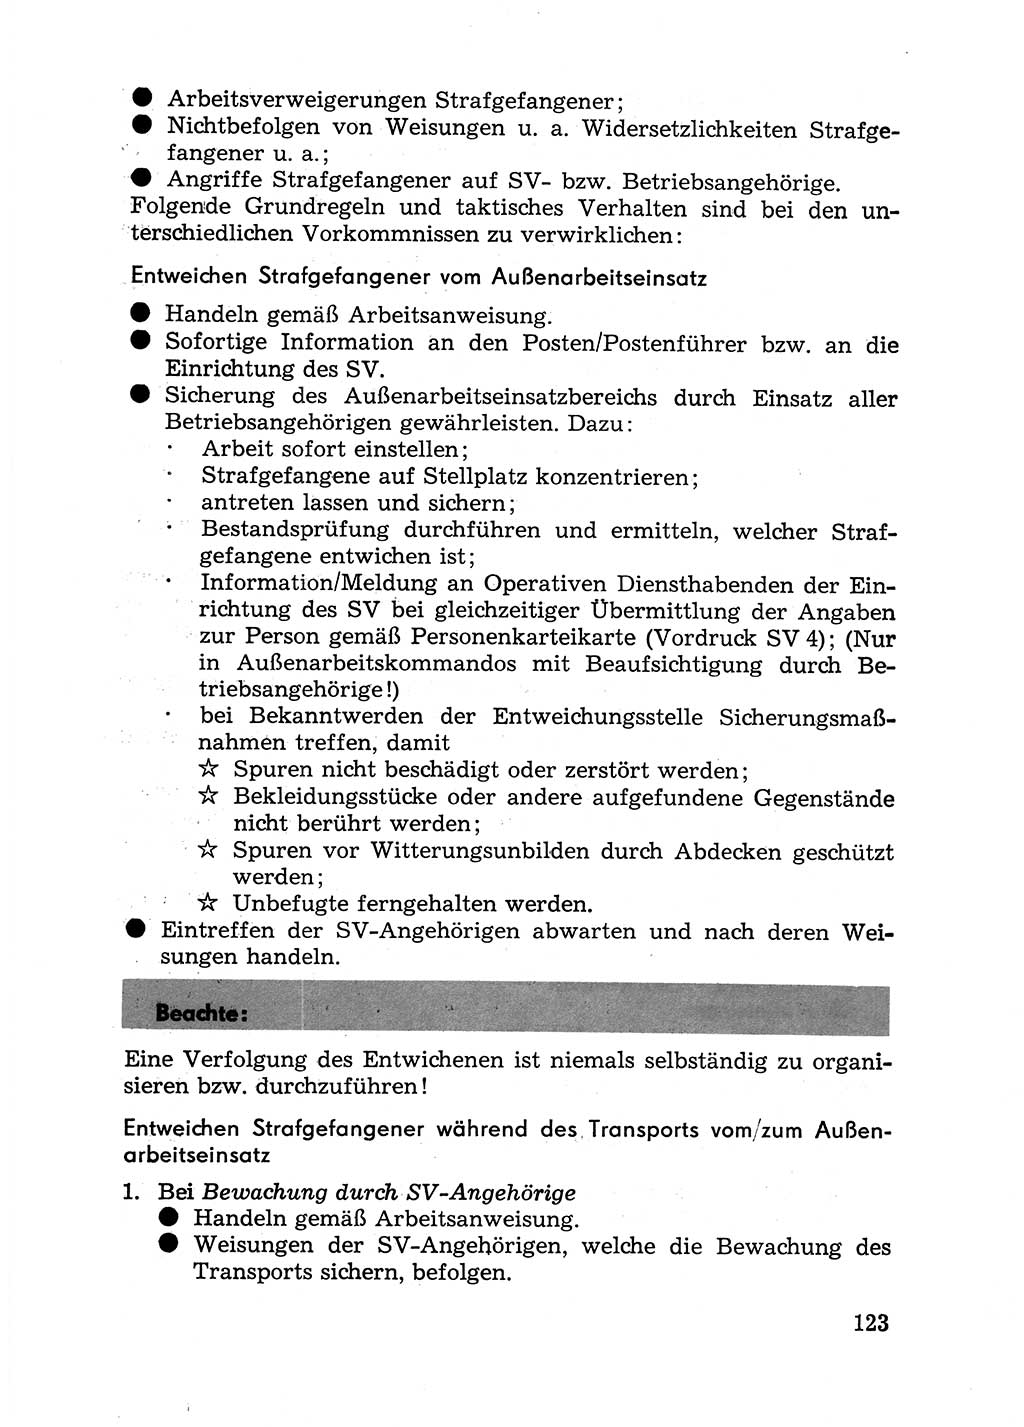 Handbuch für Betriebsangehörige, Abteilung Strafvollzug (SV) [Ministerium des Innern (MdI) Deutsche Demokratische Republik (DDR)] 1981, Seite 123 (Hb. BA Abt. SV MdI DDR 1981, S. 123)